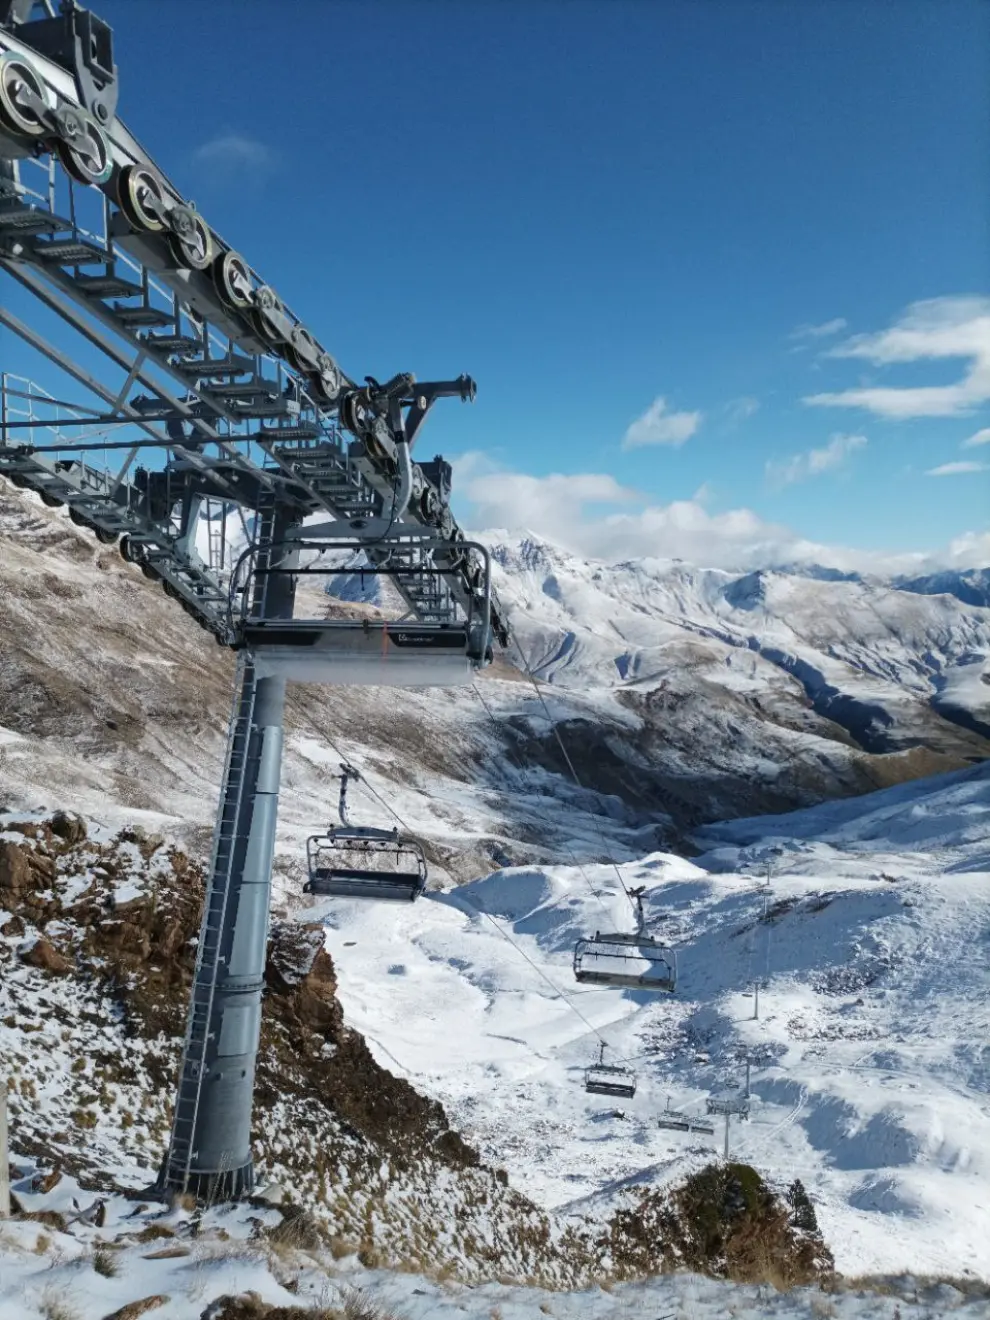 Primera nevada en las estaciones de esquí del Pirineo.